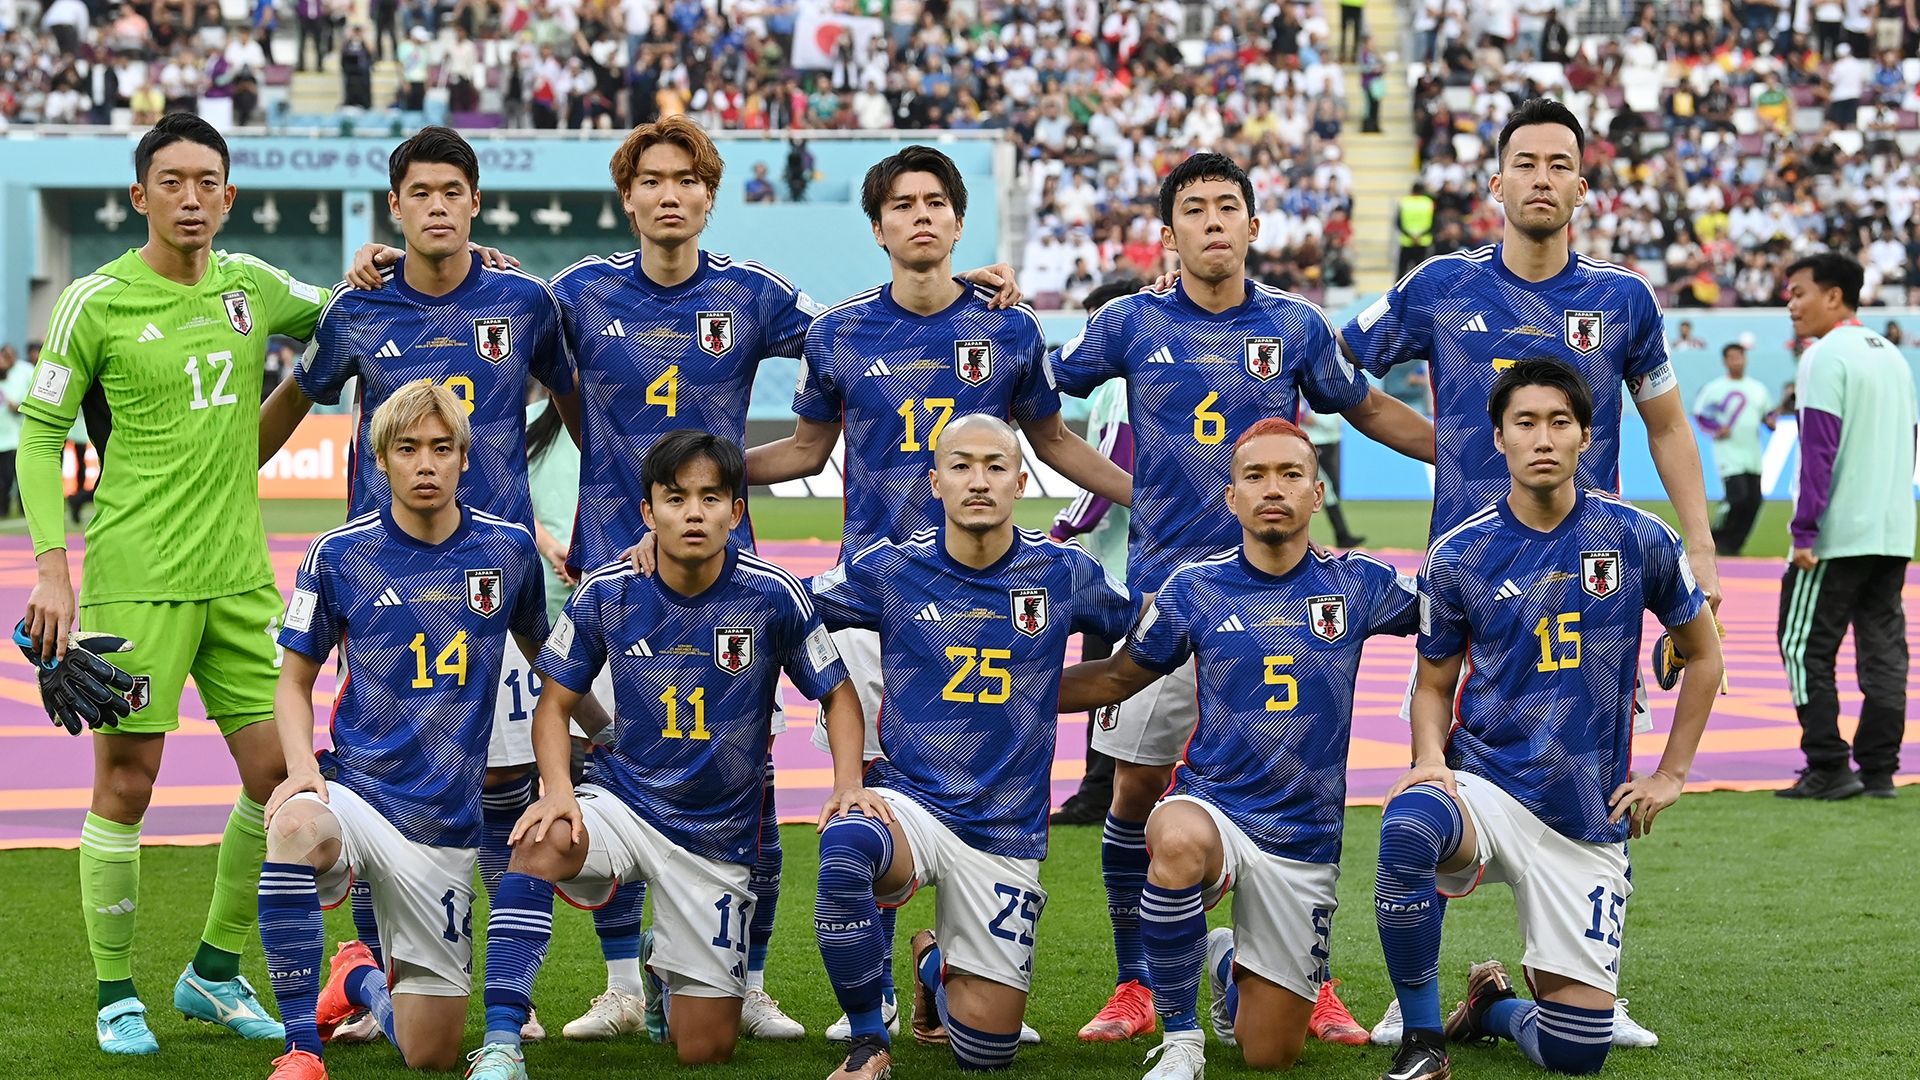 サッカー日本代表ユニフォーム フランス大会サッカー/フットサル - ウェア